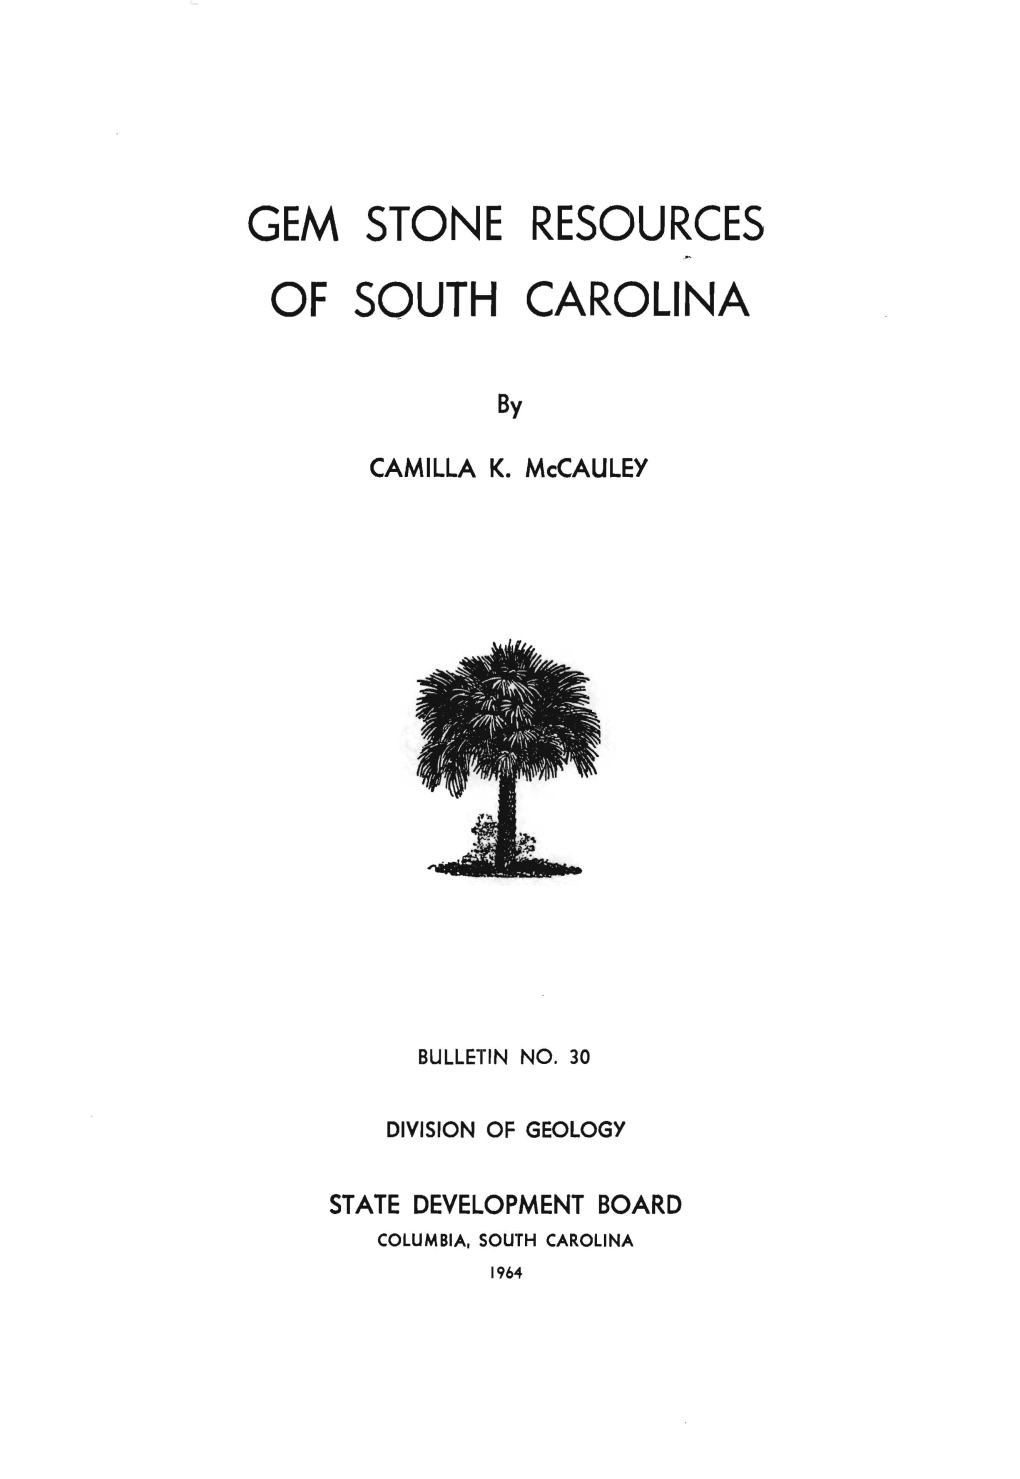 Gem Stone Resources of South Carolina